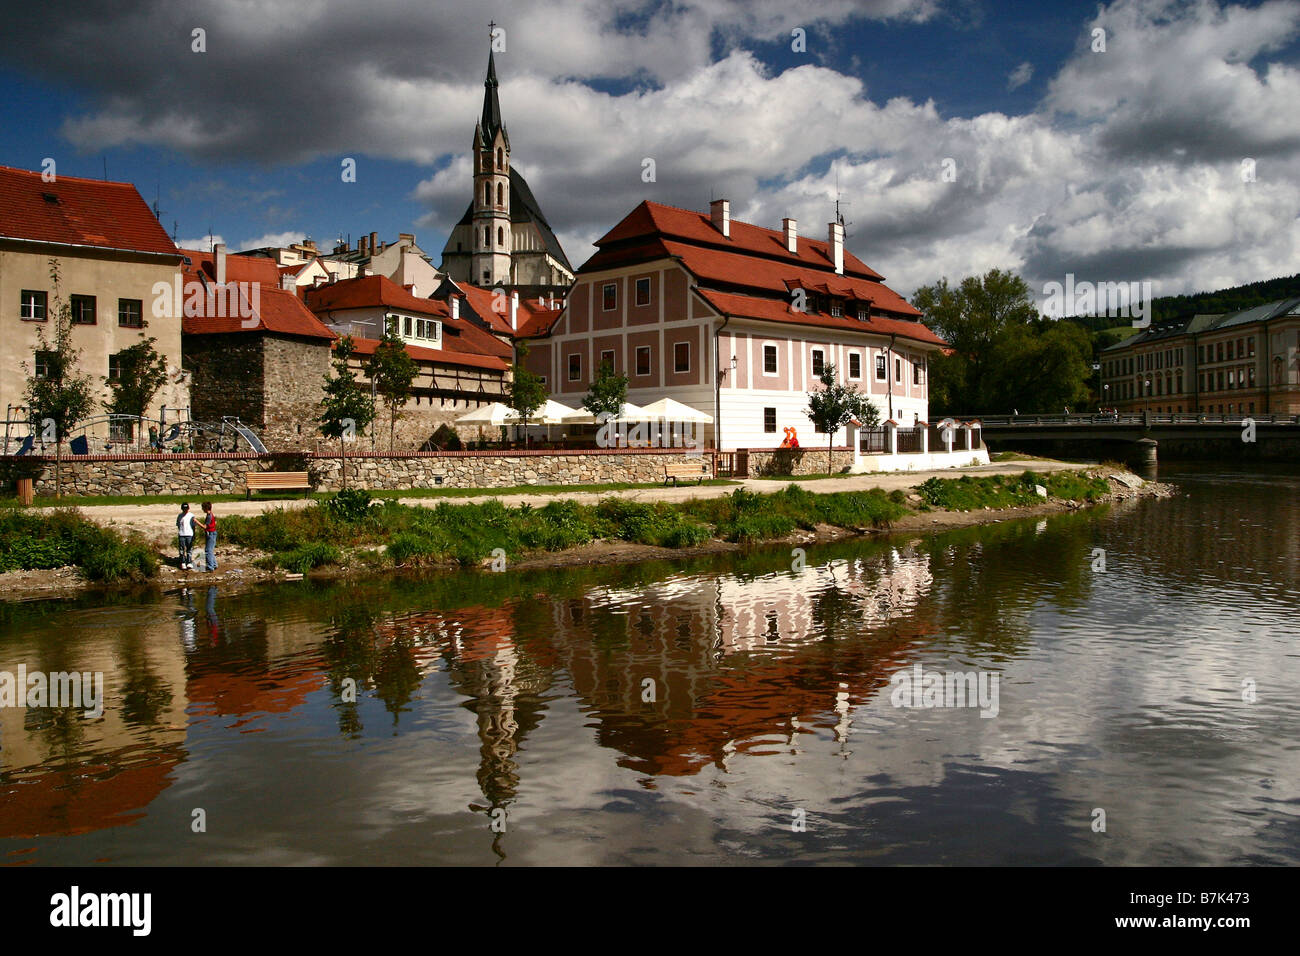 San Vito chiesa edificio e riflessi nel fiume Moldava a Cesky Krumlov, villaggio della Boemia in Repubblica Ceca Foto Stock